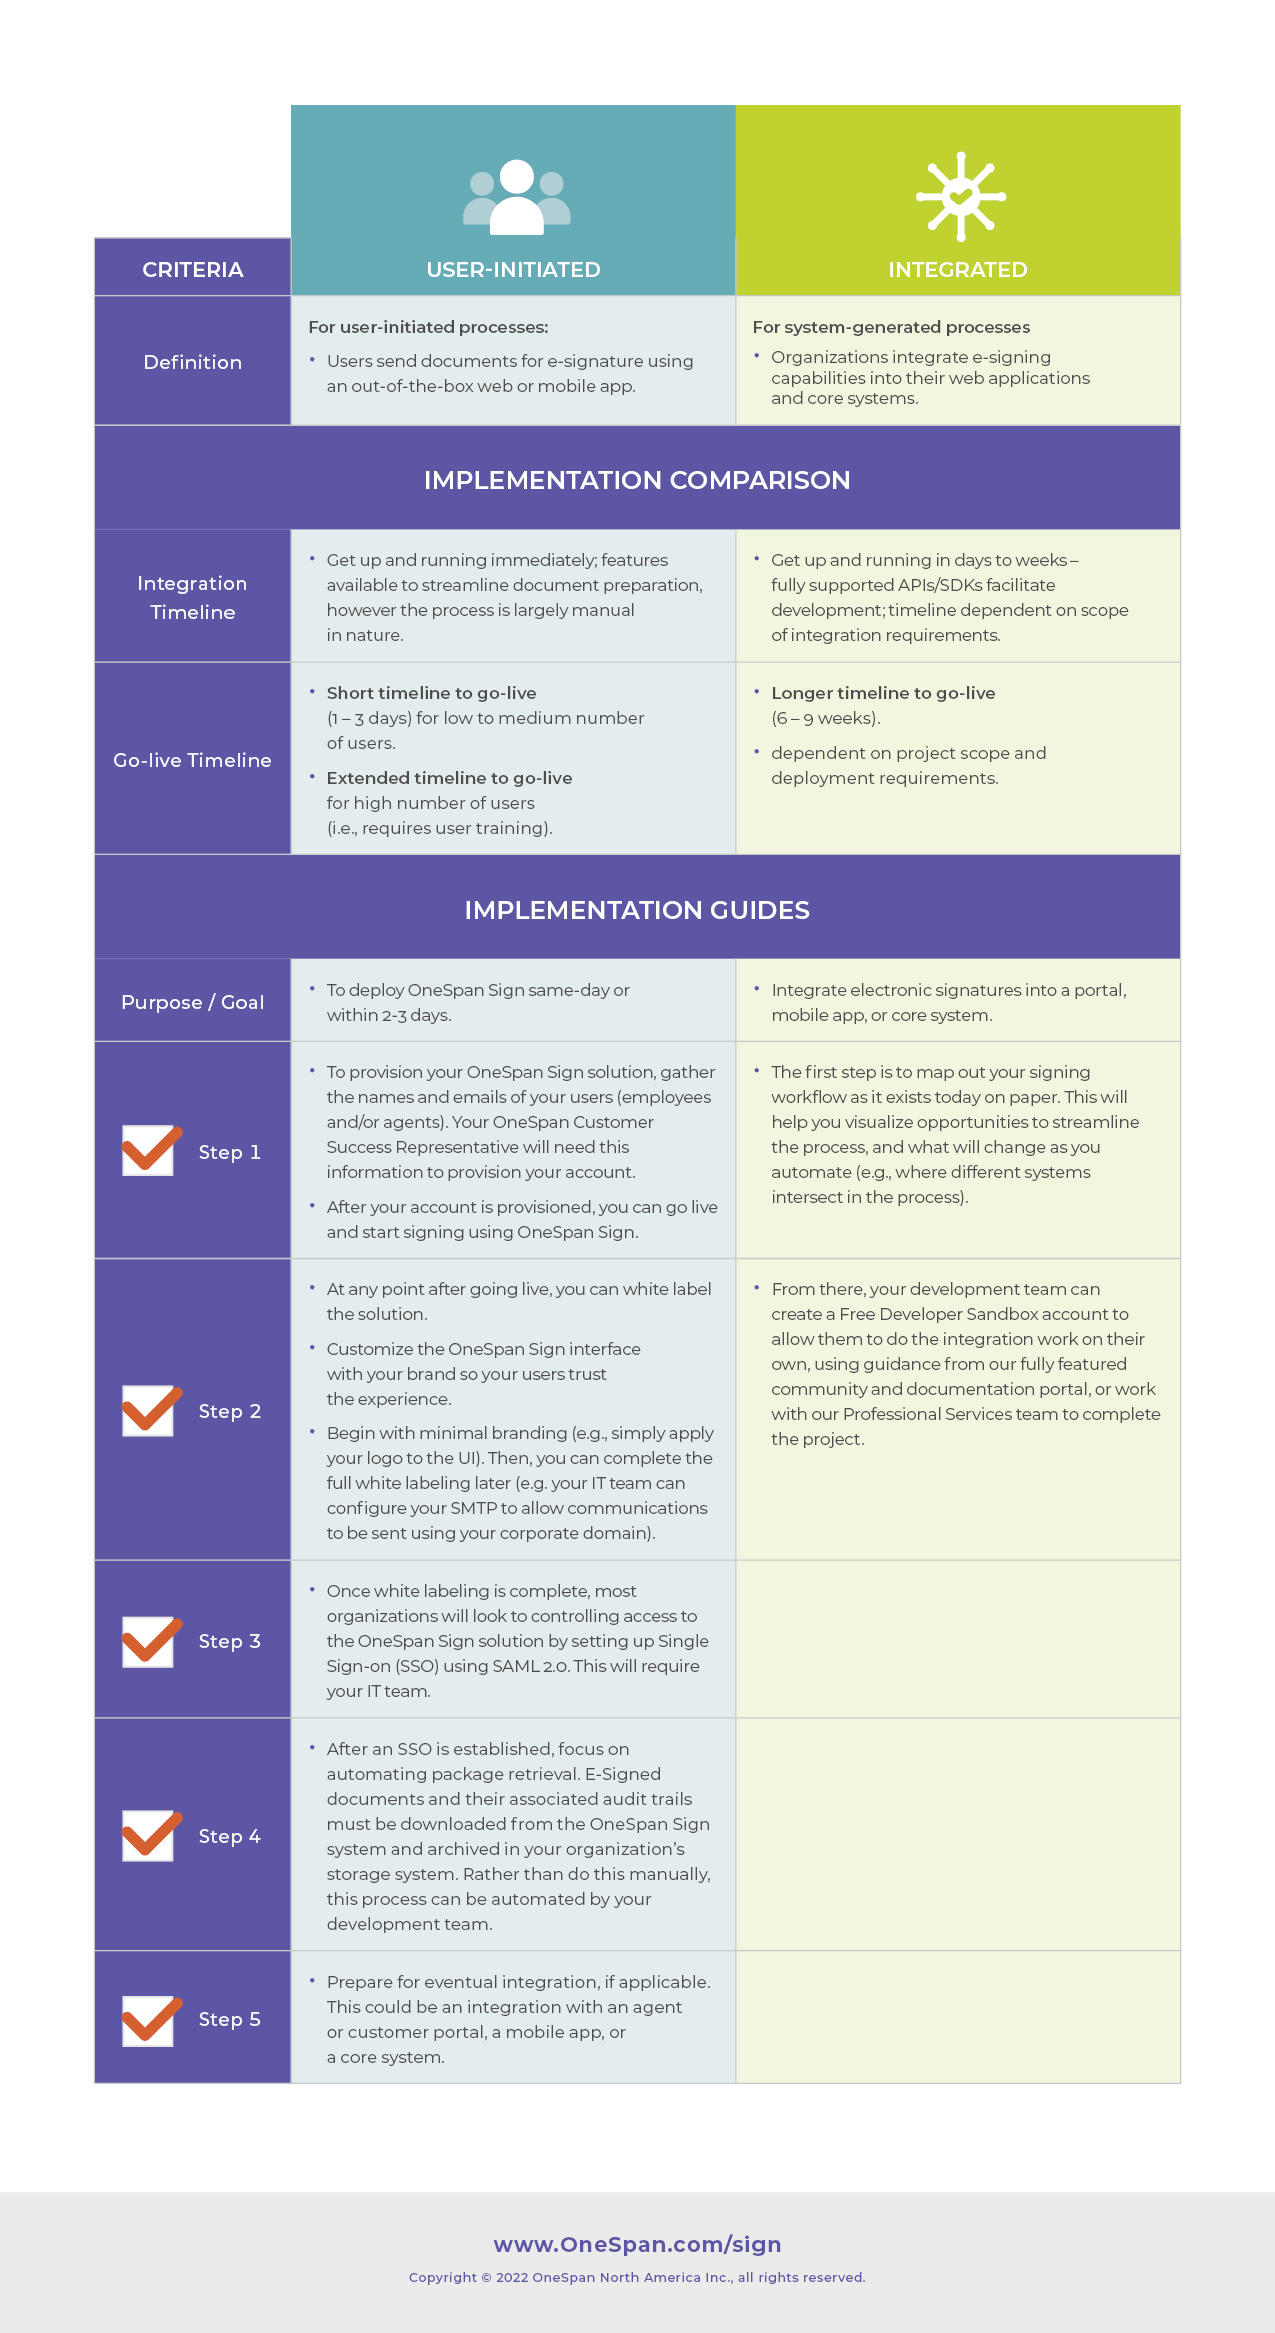 E-Signature Readiness Checklist